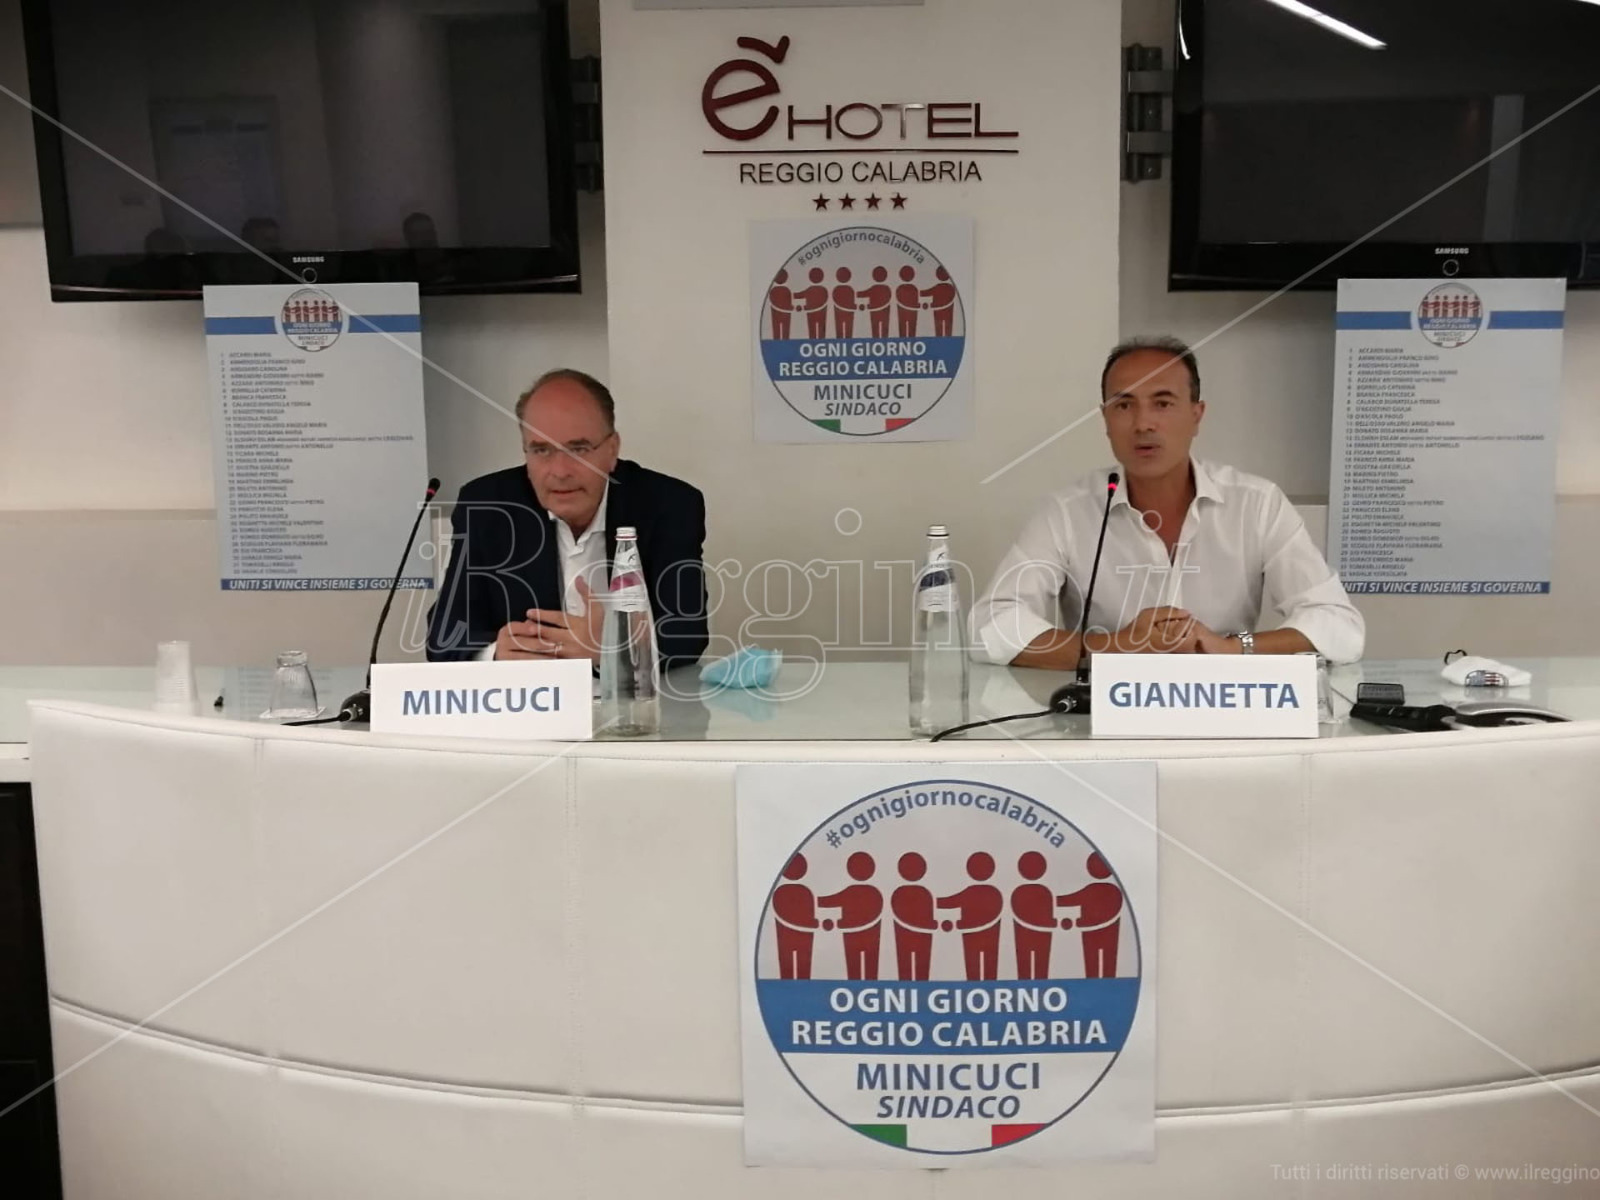 Elezioni comunali, Giannetta presenta la lista “Ogni giorno Reggio Calabria” per Minicuci sindaco